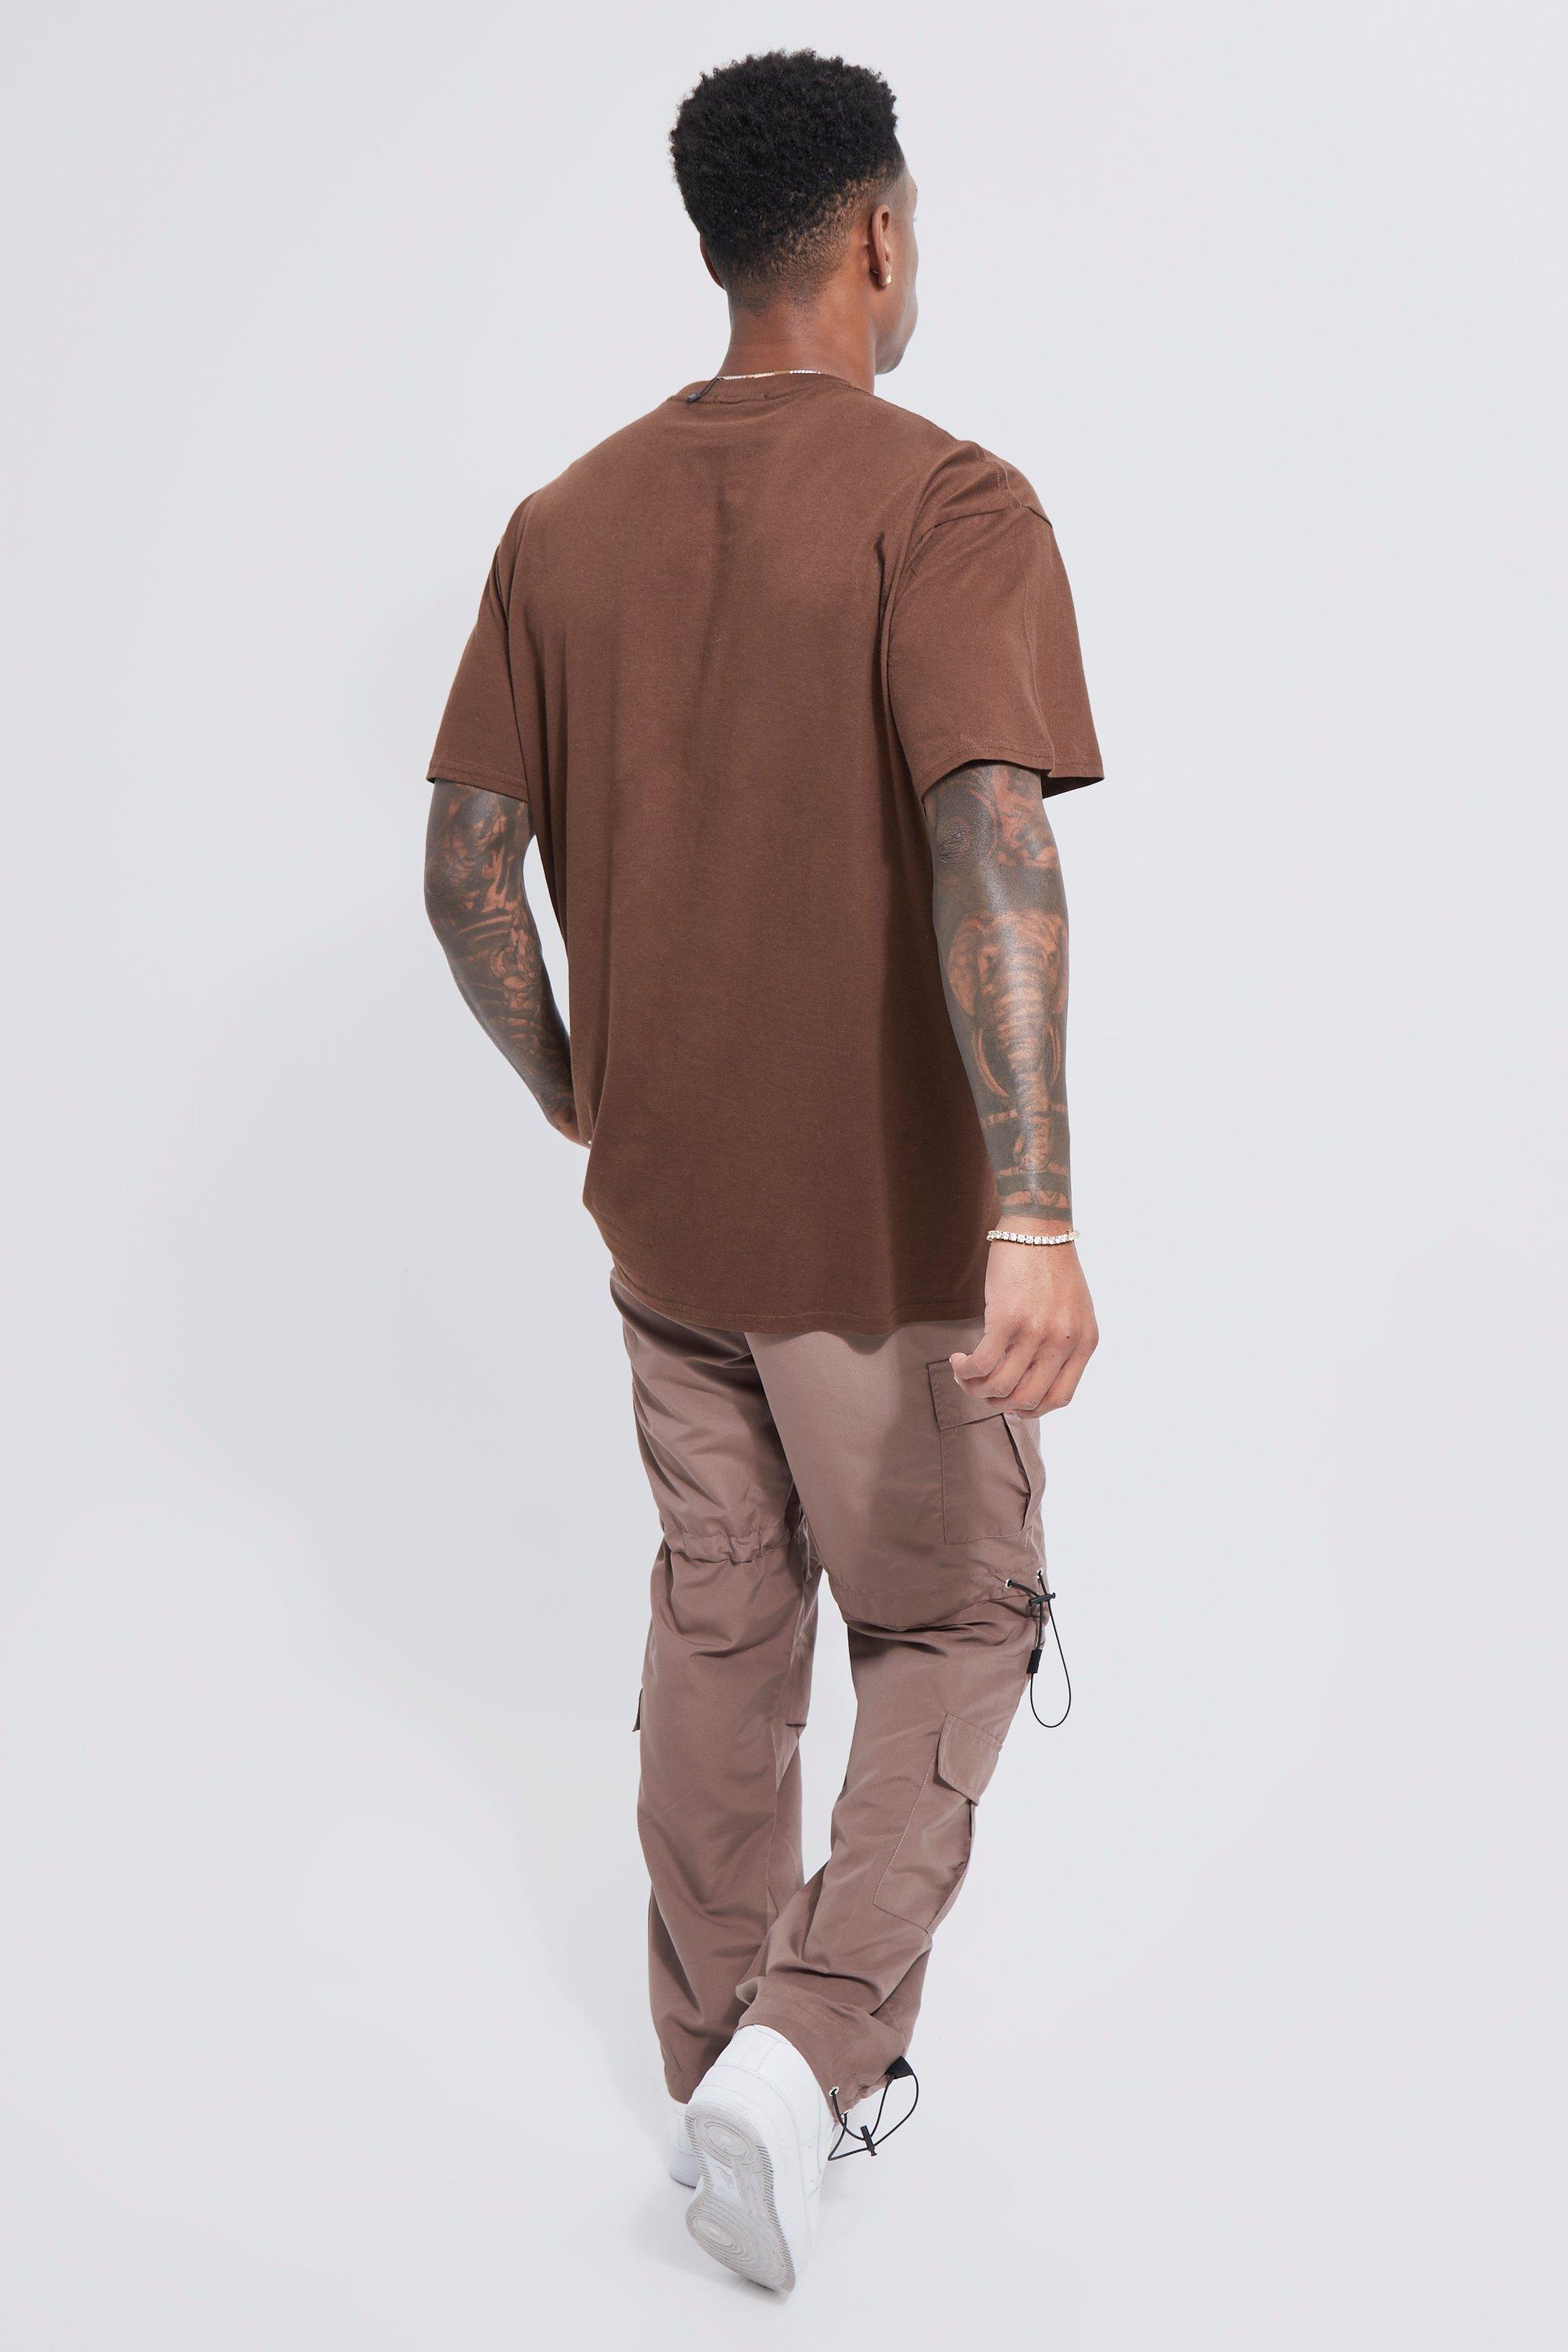 Camiseta oversize Color marrón oscuro - HOUSE - 9799P-89X